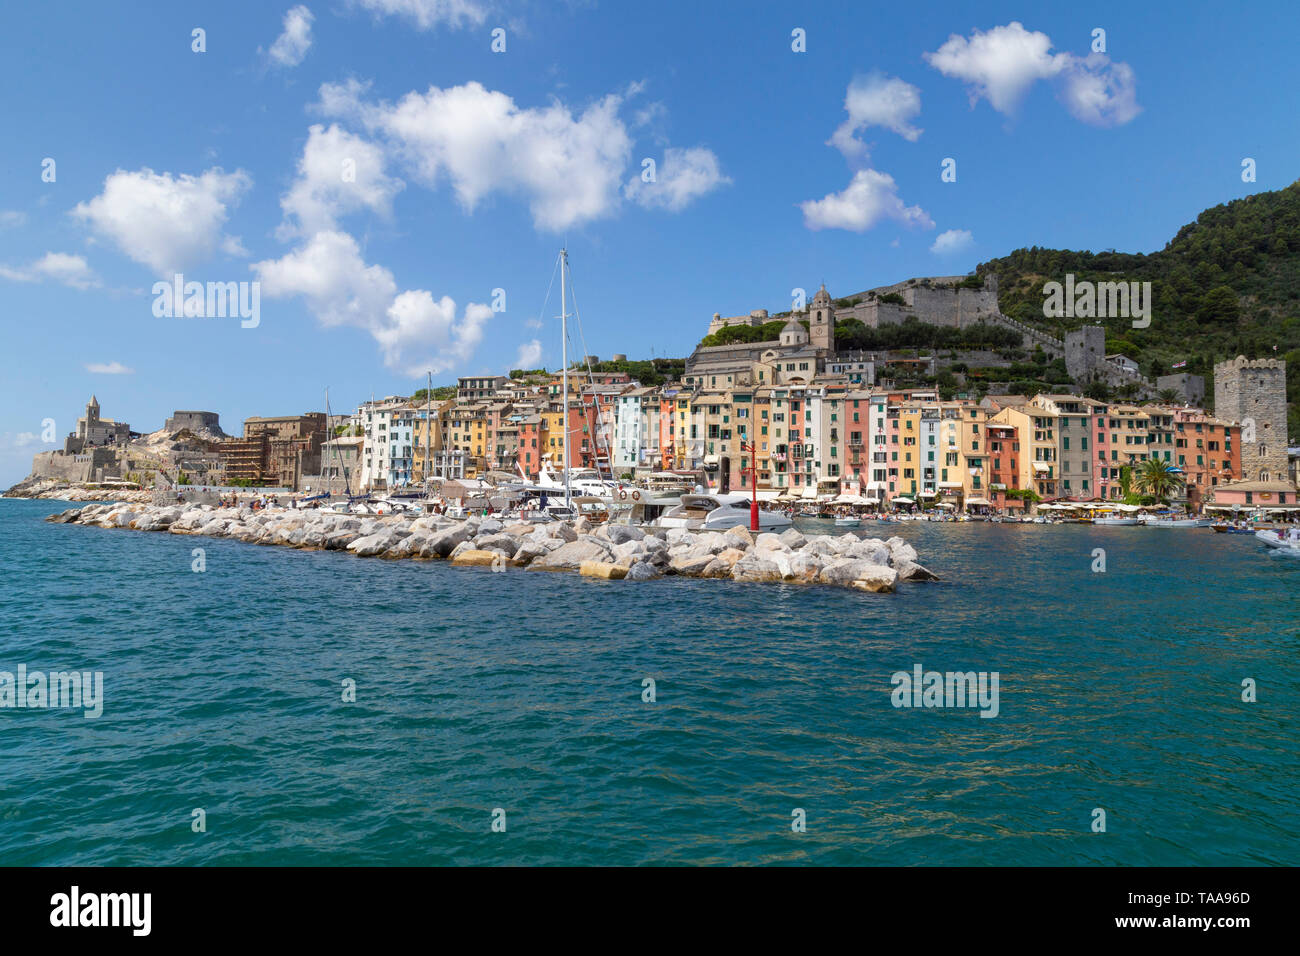 Portovenere o Porto Venere es onu municipio italiano de 3.990 habitantes de la provincia de La Spezia. Se encuentra en la costa de la Liguria, sobre el m Foto Stock